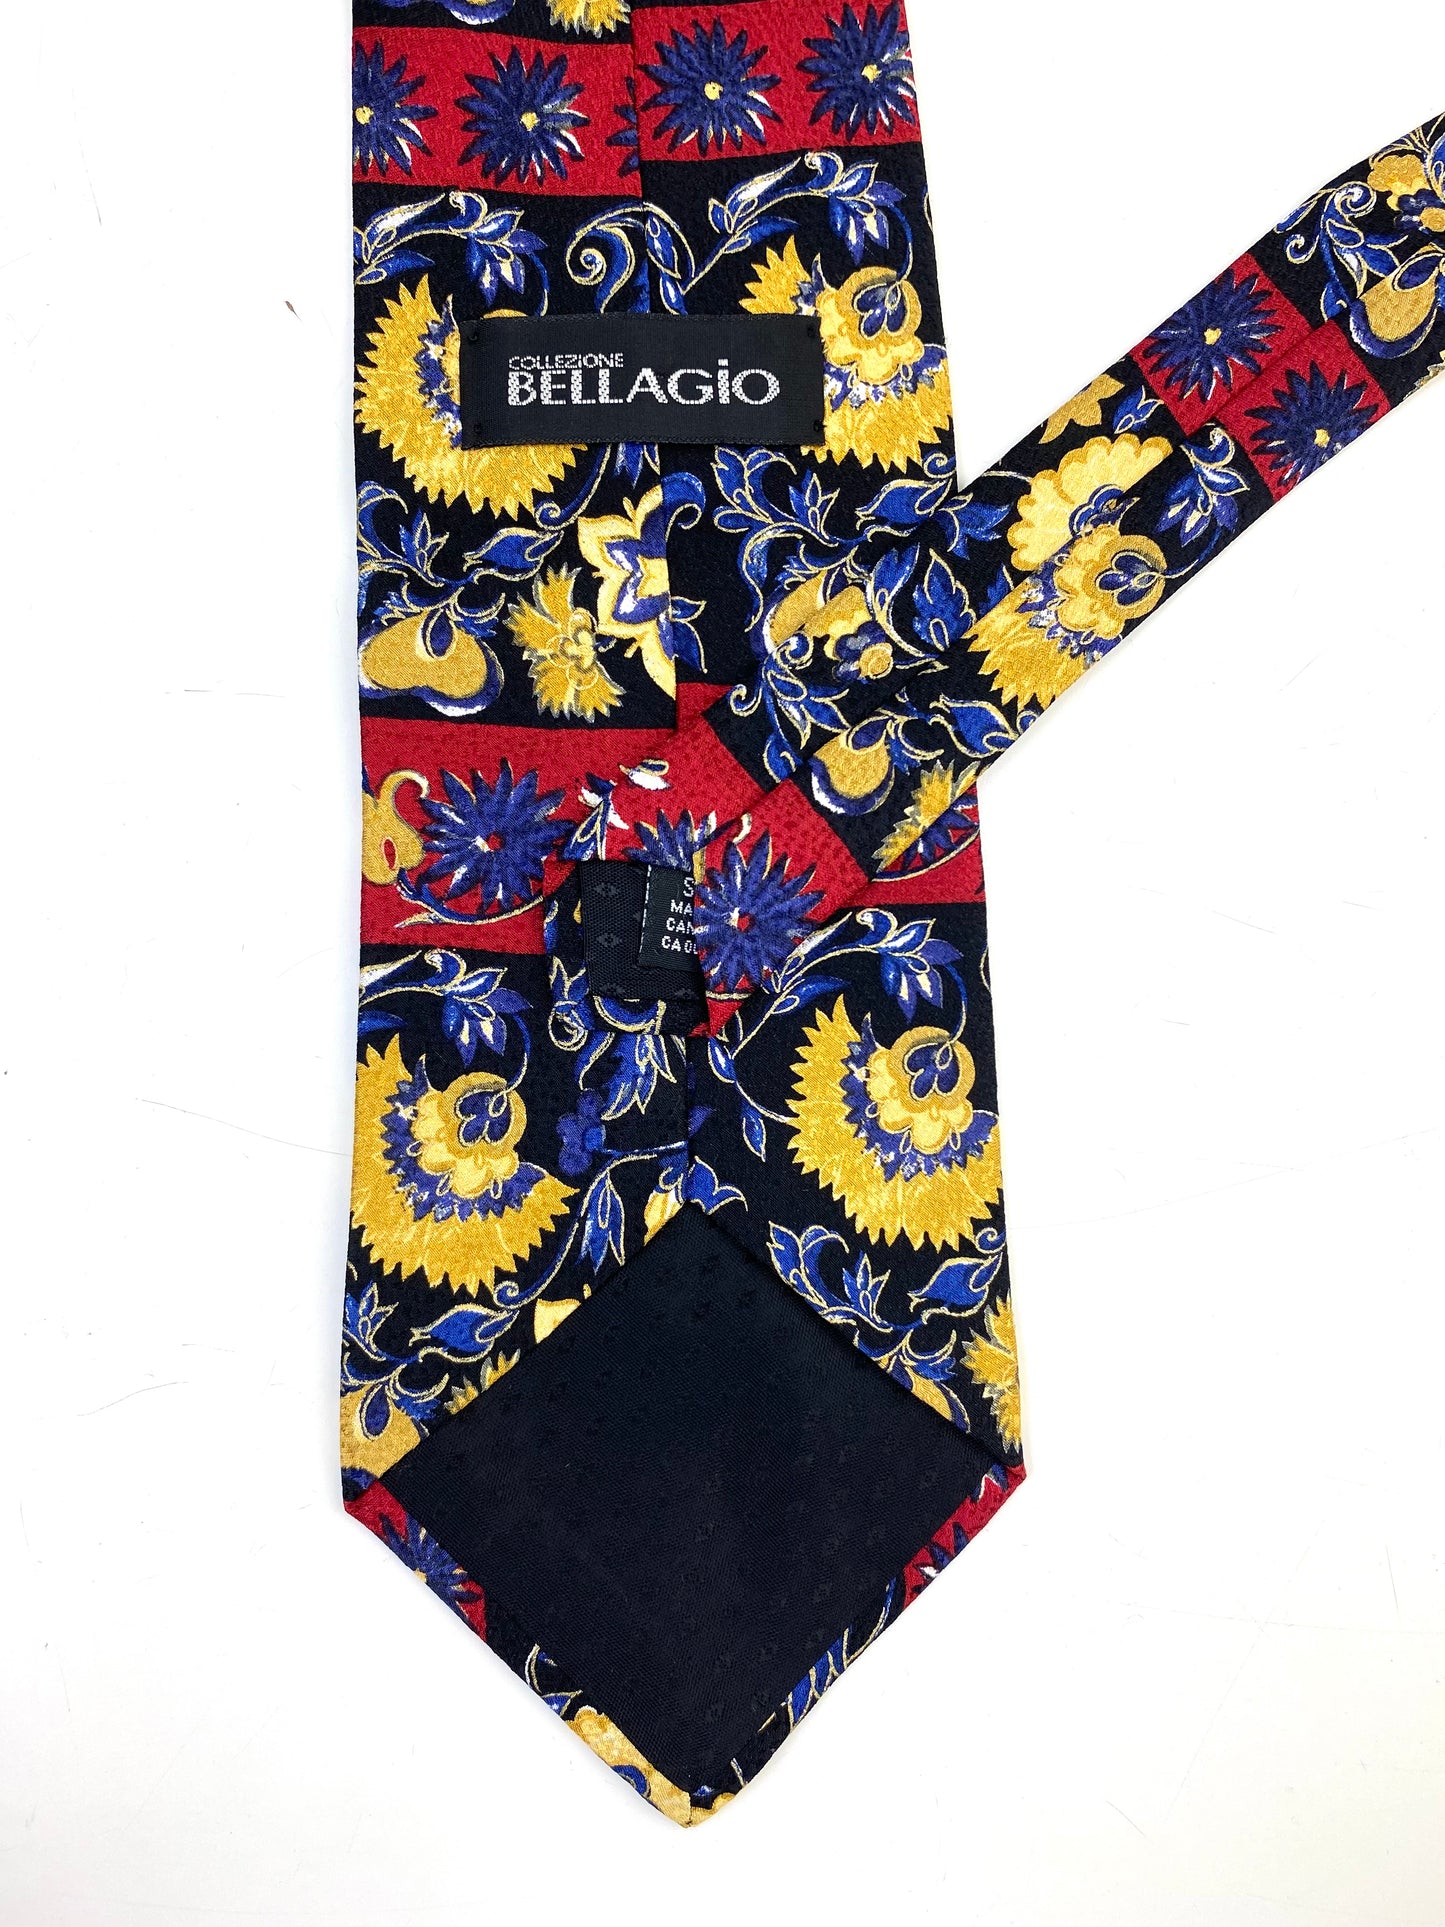 90s Deadstock Silk Necktie, Men's Vintage Blue/ Wine Floral Pattern Tie, NOS